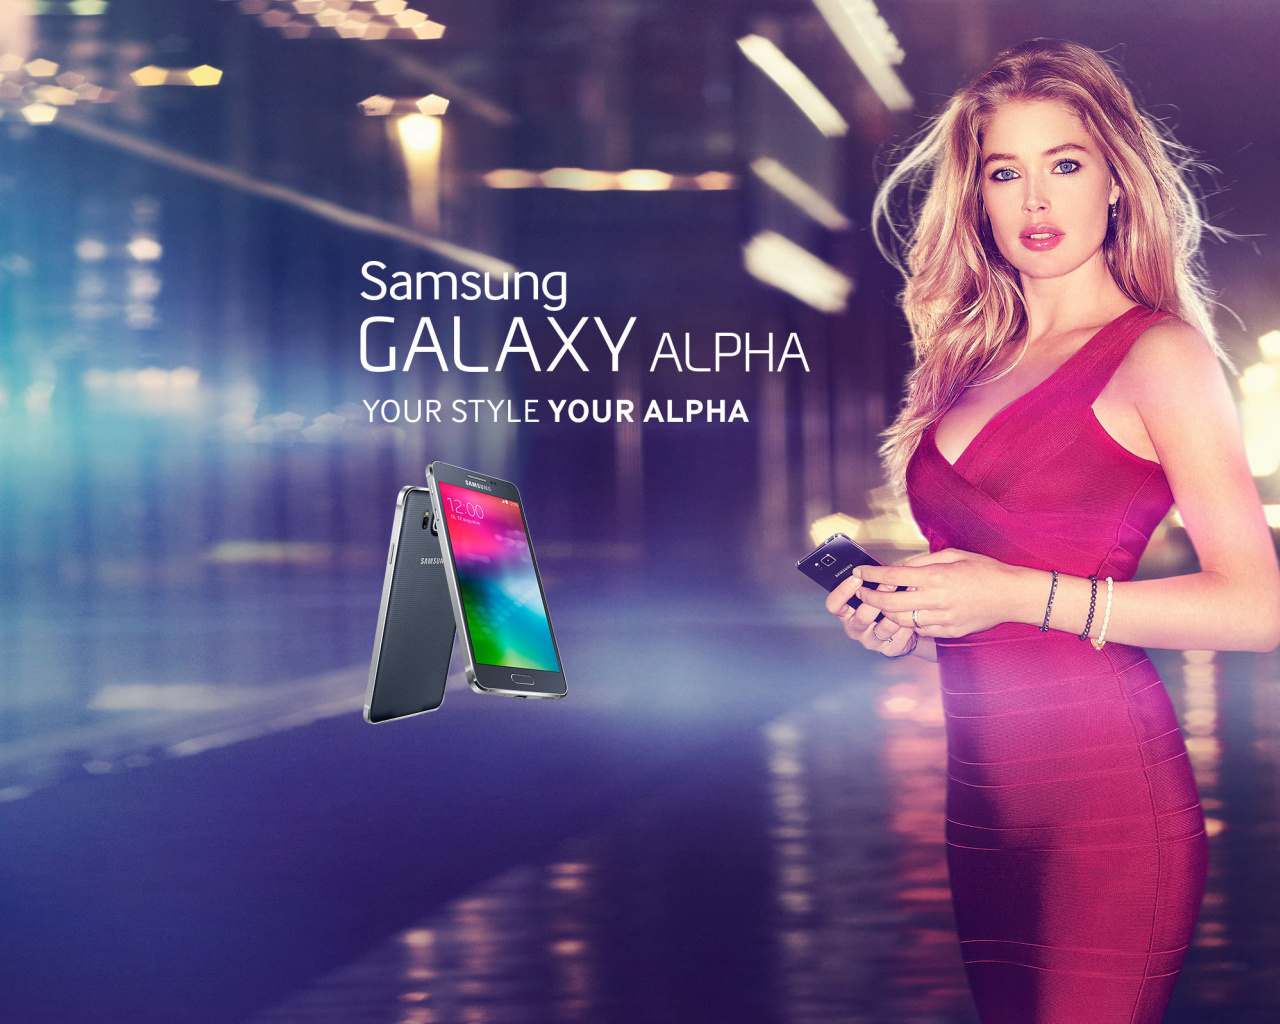 Samsung Galaxy Alpha Advertisement with Doutzen Kroes screenshot #1 1280x1024